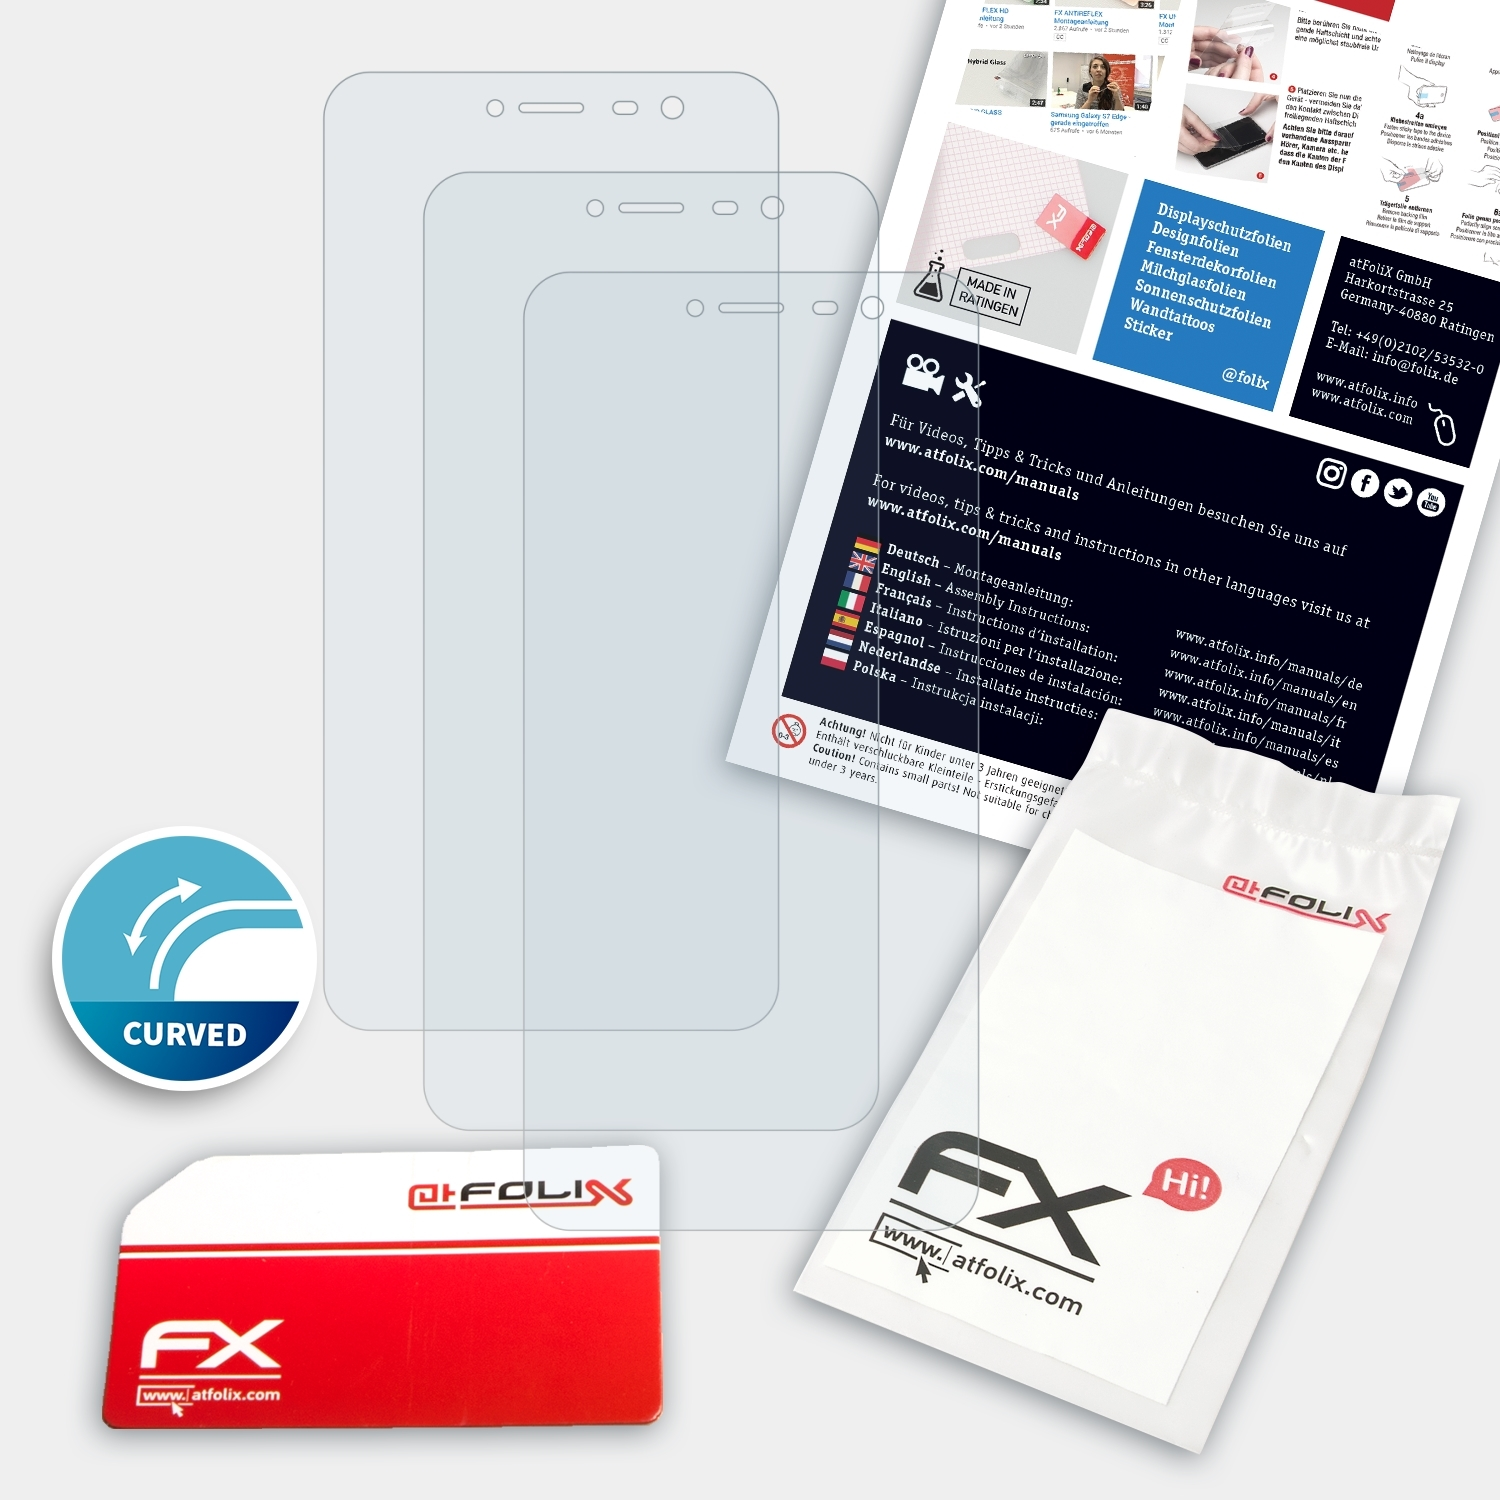 ATFOLIX 3x Plus) FX-ActiFleX Cubot Note Displayschutz(für